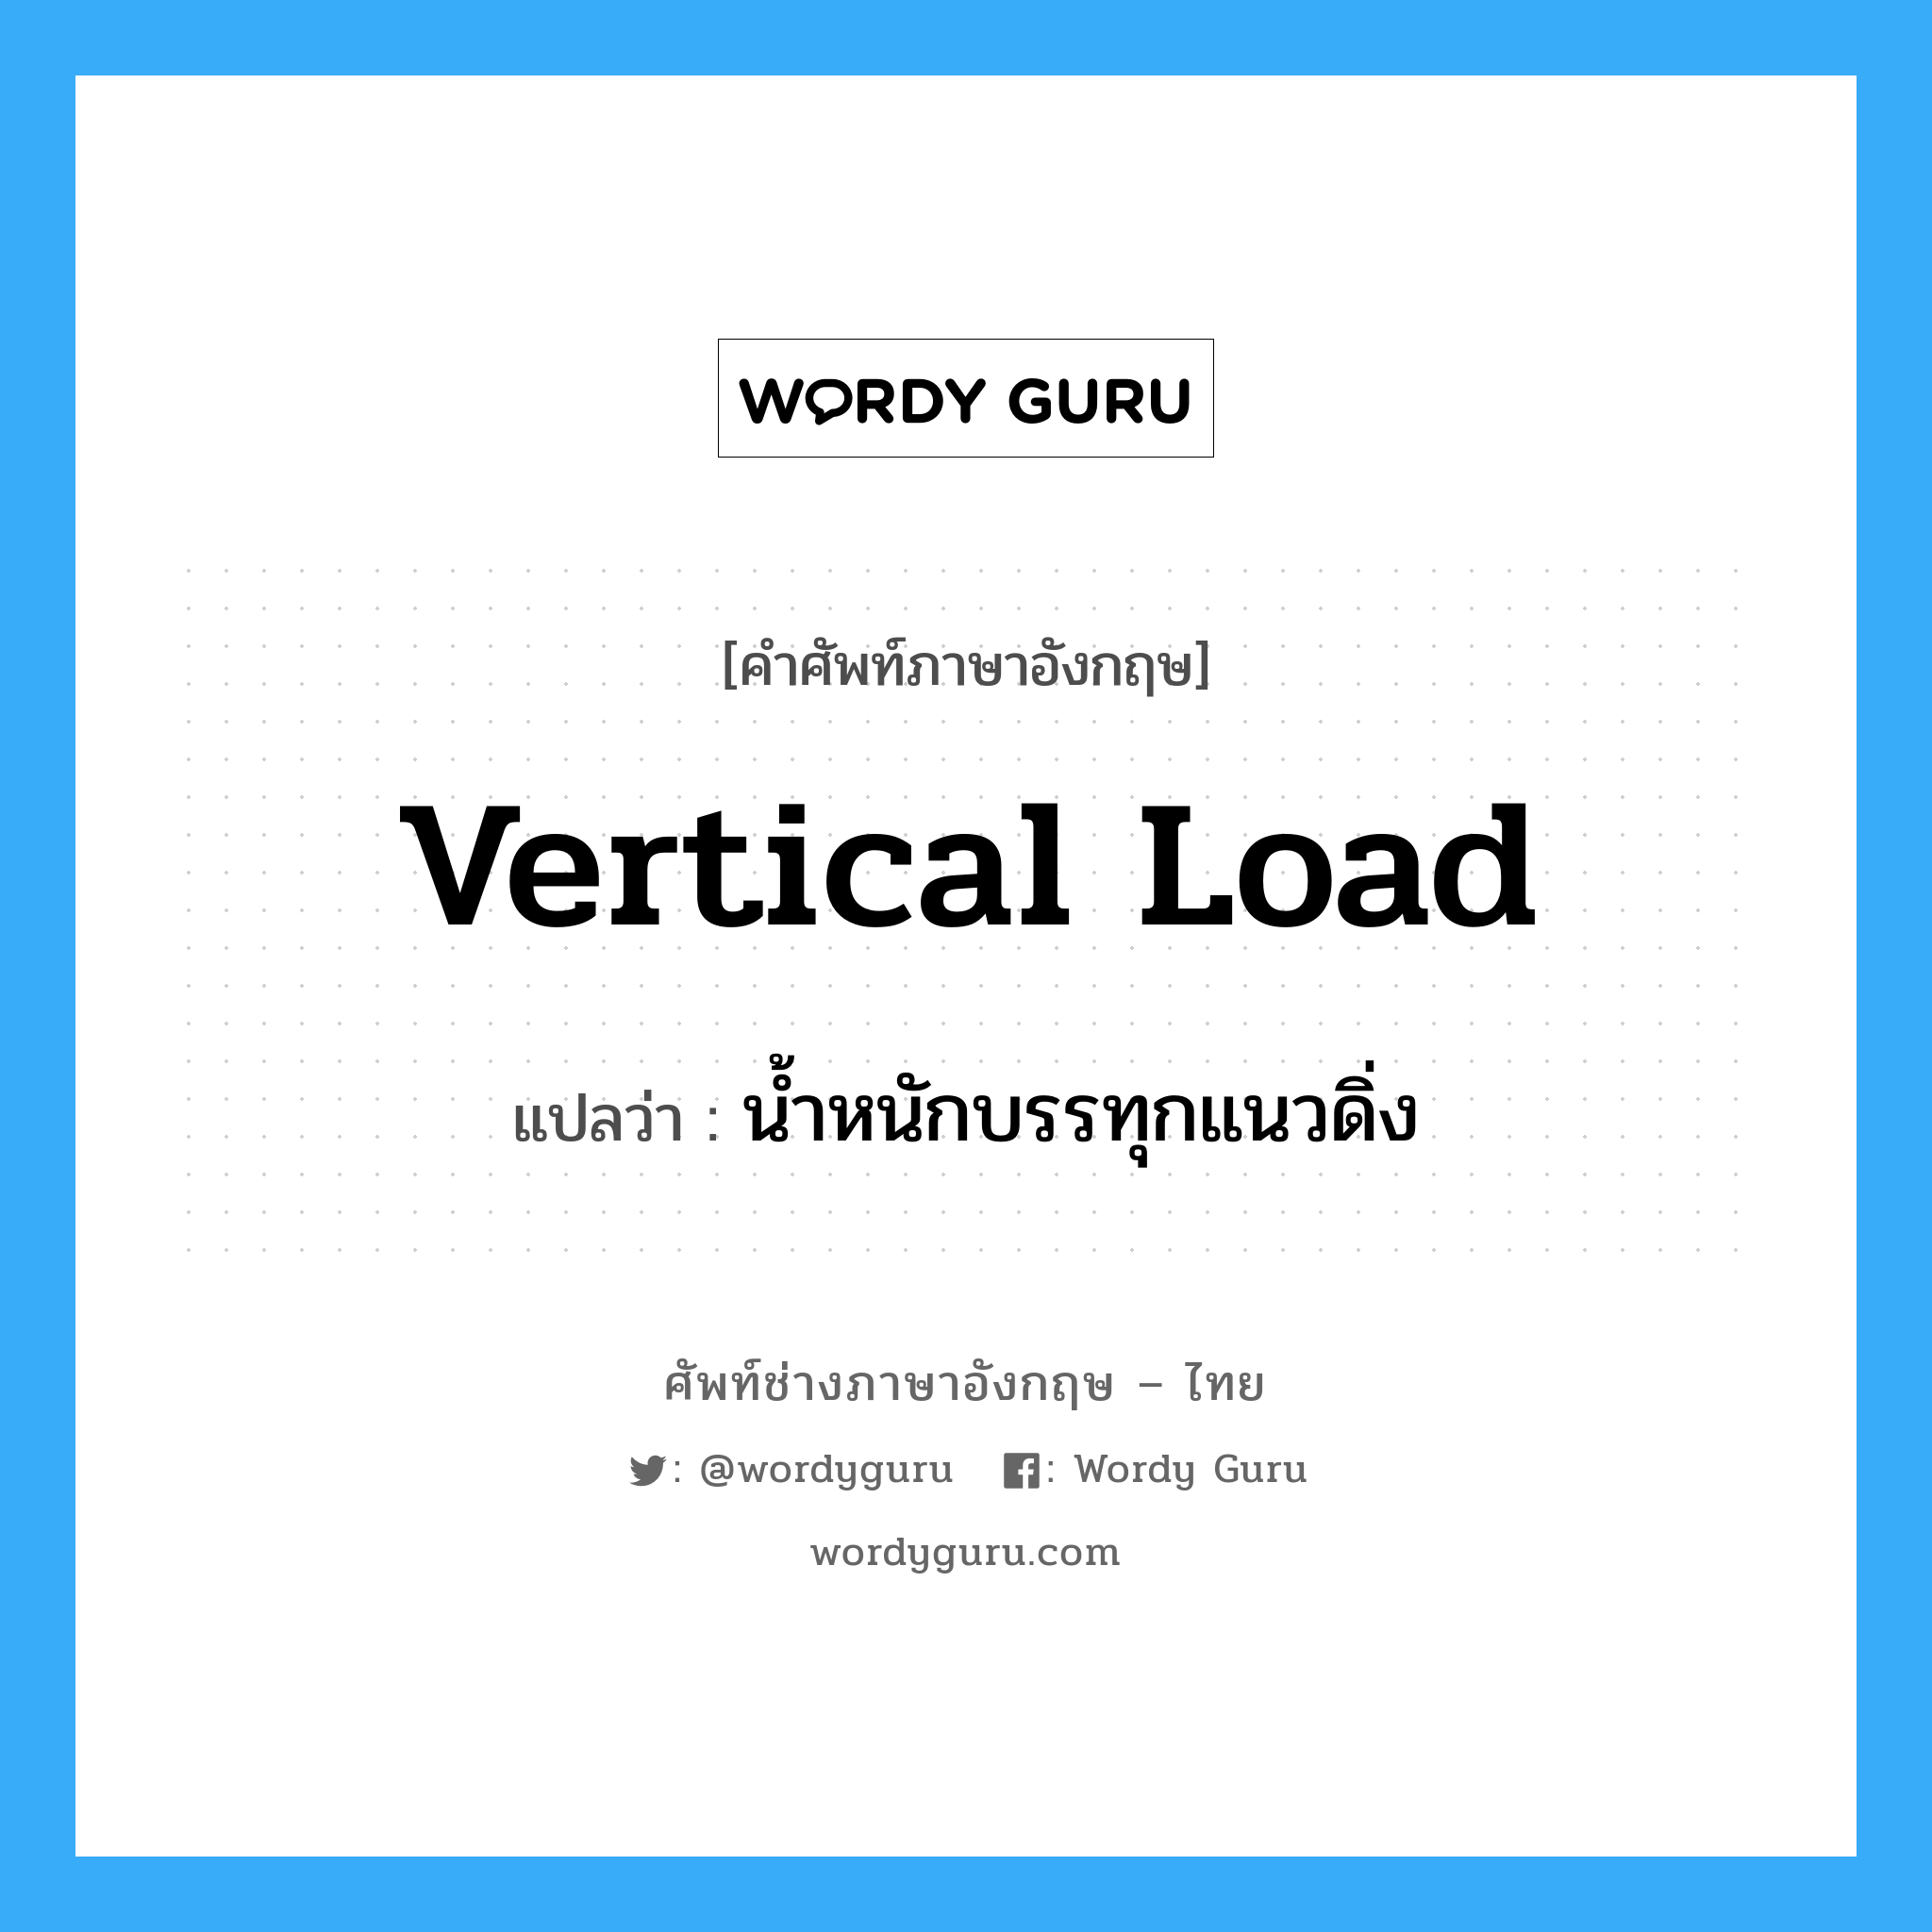 น้ำหนักบรรทุกแนวดิ่ง ภาษาอังกฤษ?, คำศัพท์ช่างภาษาอังกฤษ - ไทย น้ำหนักบรรทุกแนวดิ่ง คำศัพท์ภาษาอังกฤษ น้ำหนักบรรทุกแนวดิ่ง แปลว่า vertical load